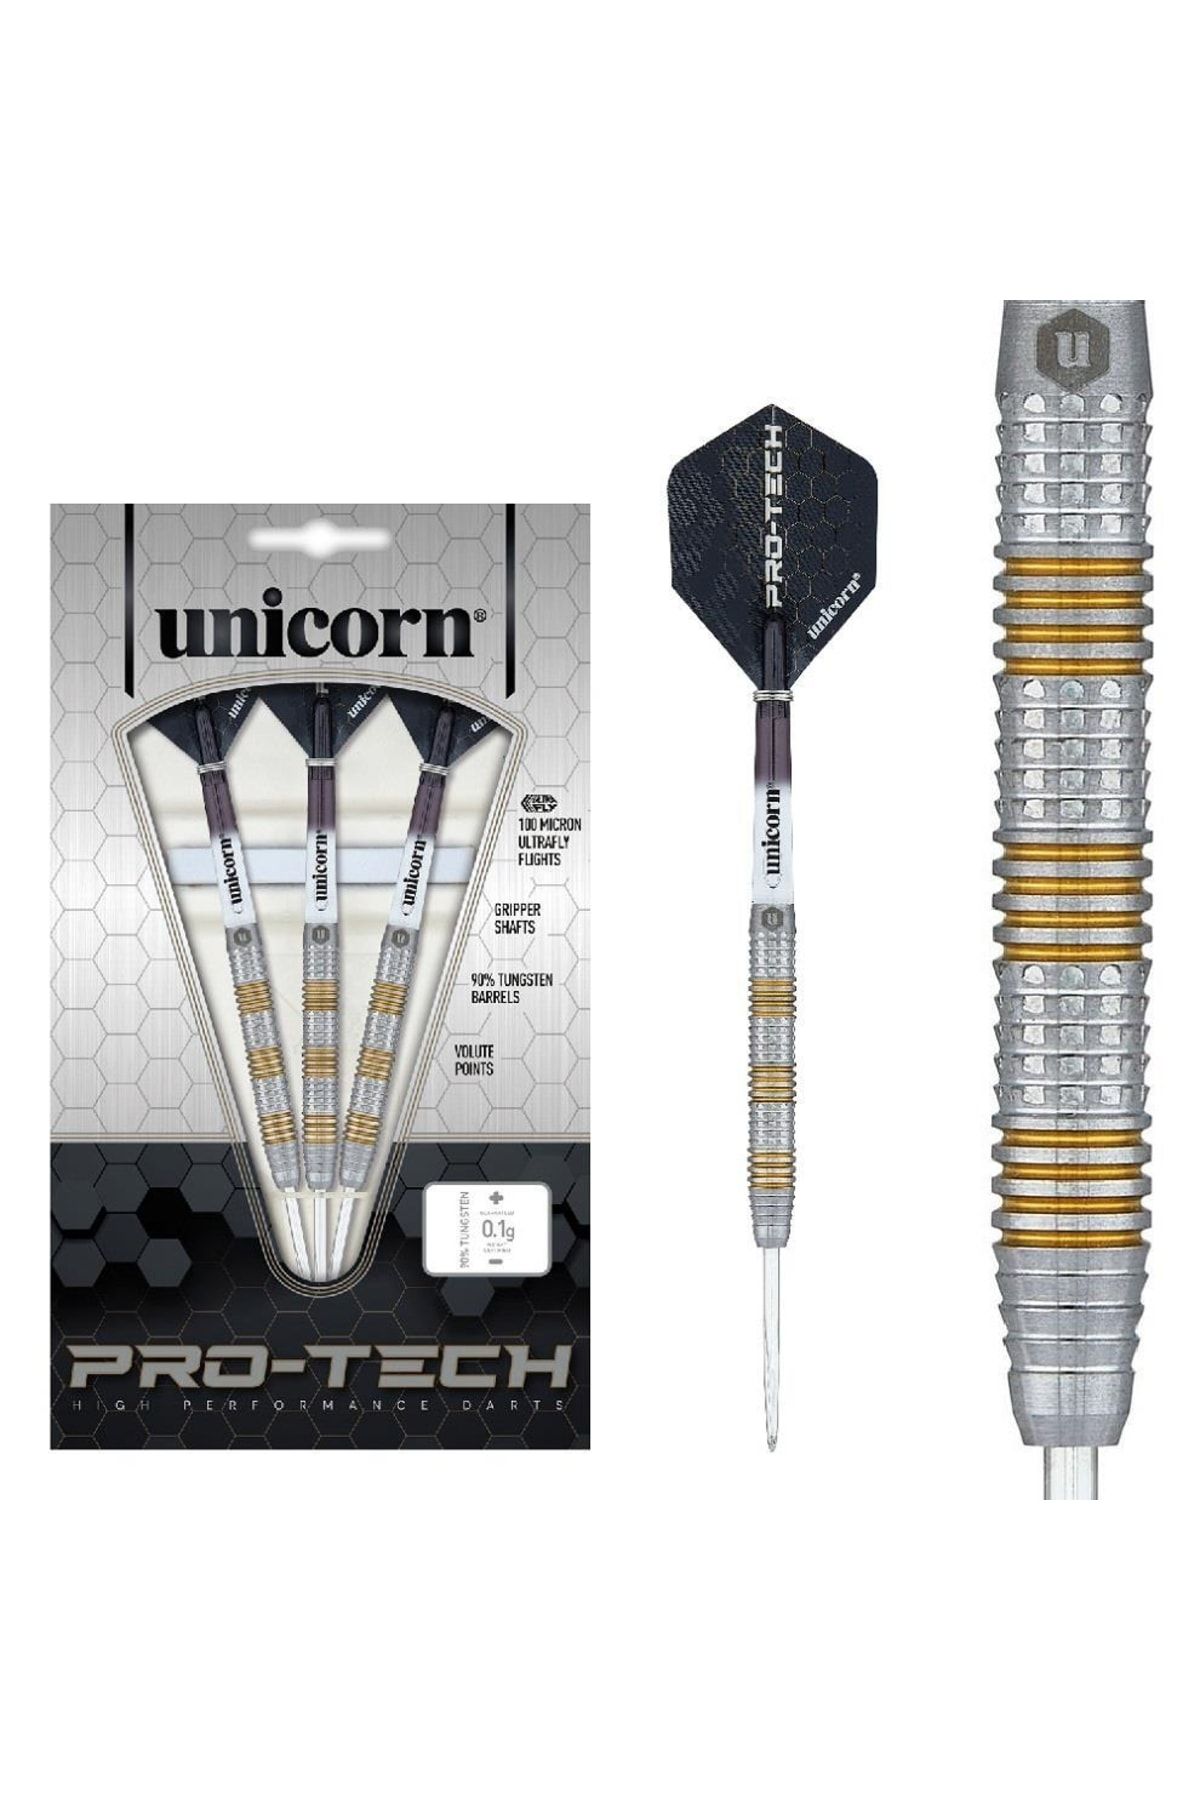 Unicorn Pro-tech Style 3 % 90 Tungsten Çelik Uçlu Dart Oku